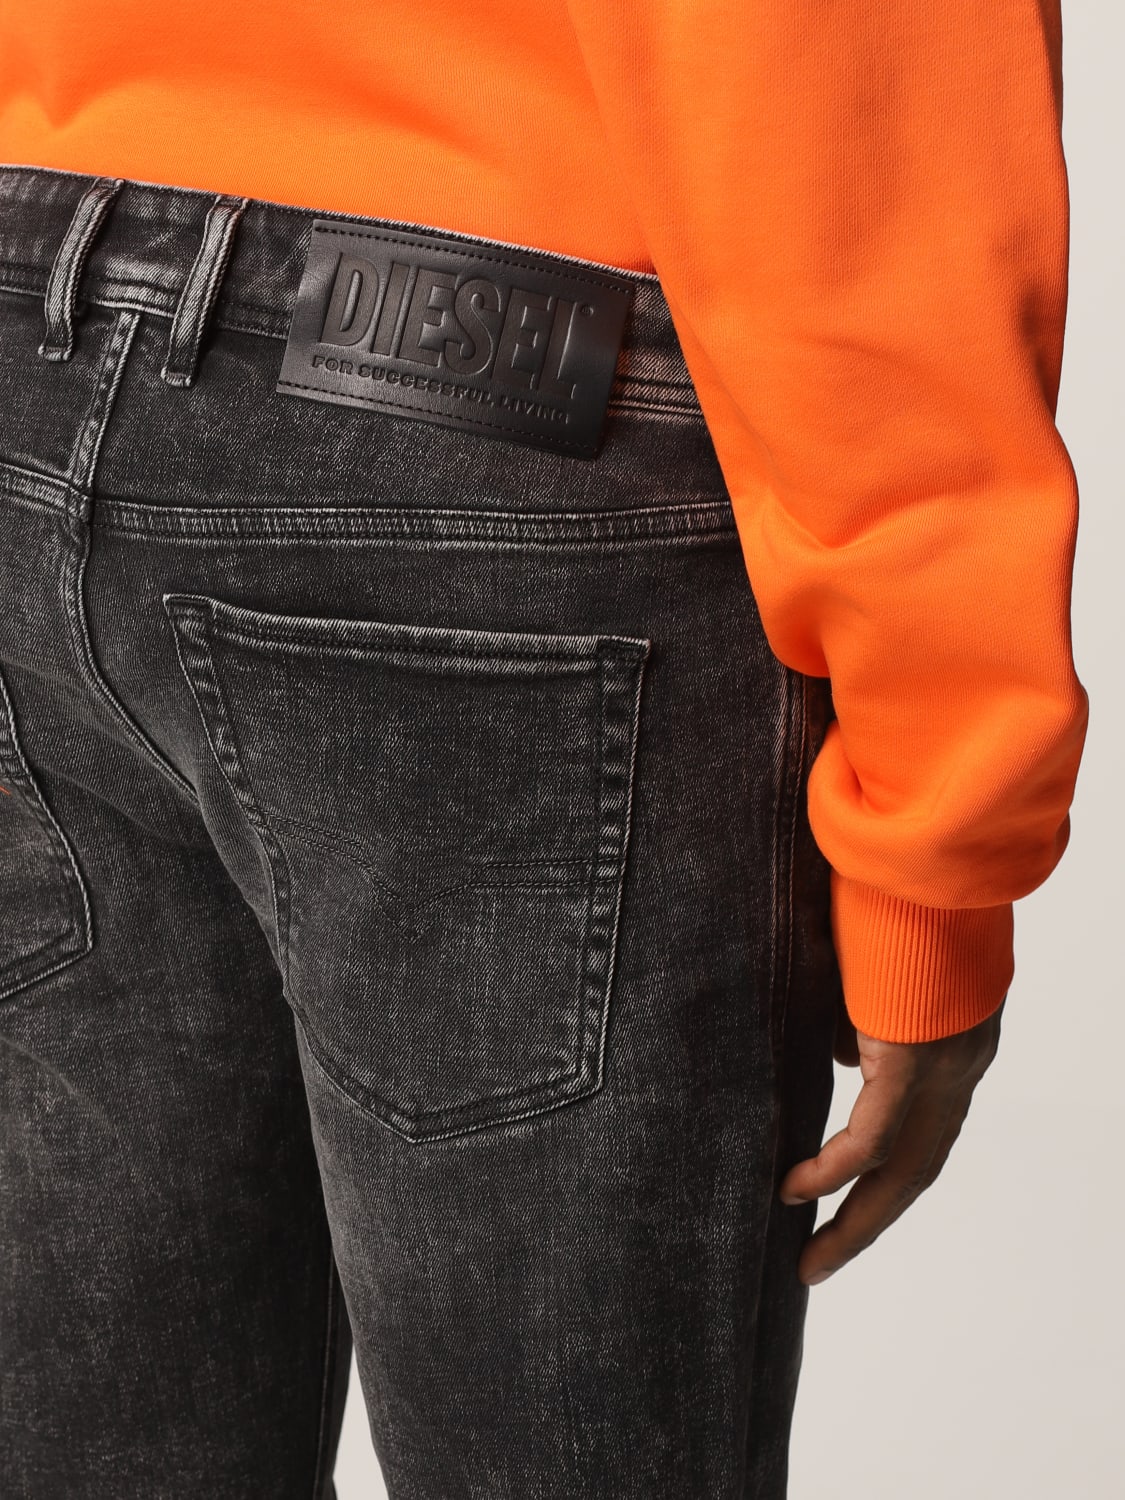 Diesel Outlet: 5-pocket in washed denim Black | Diesel jeans 09A17 online at GIGLIO.COM